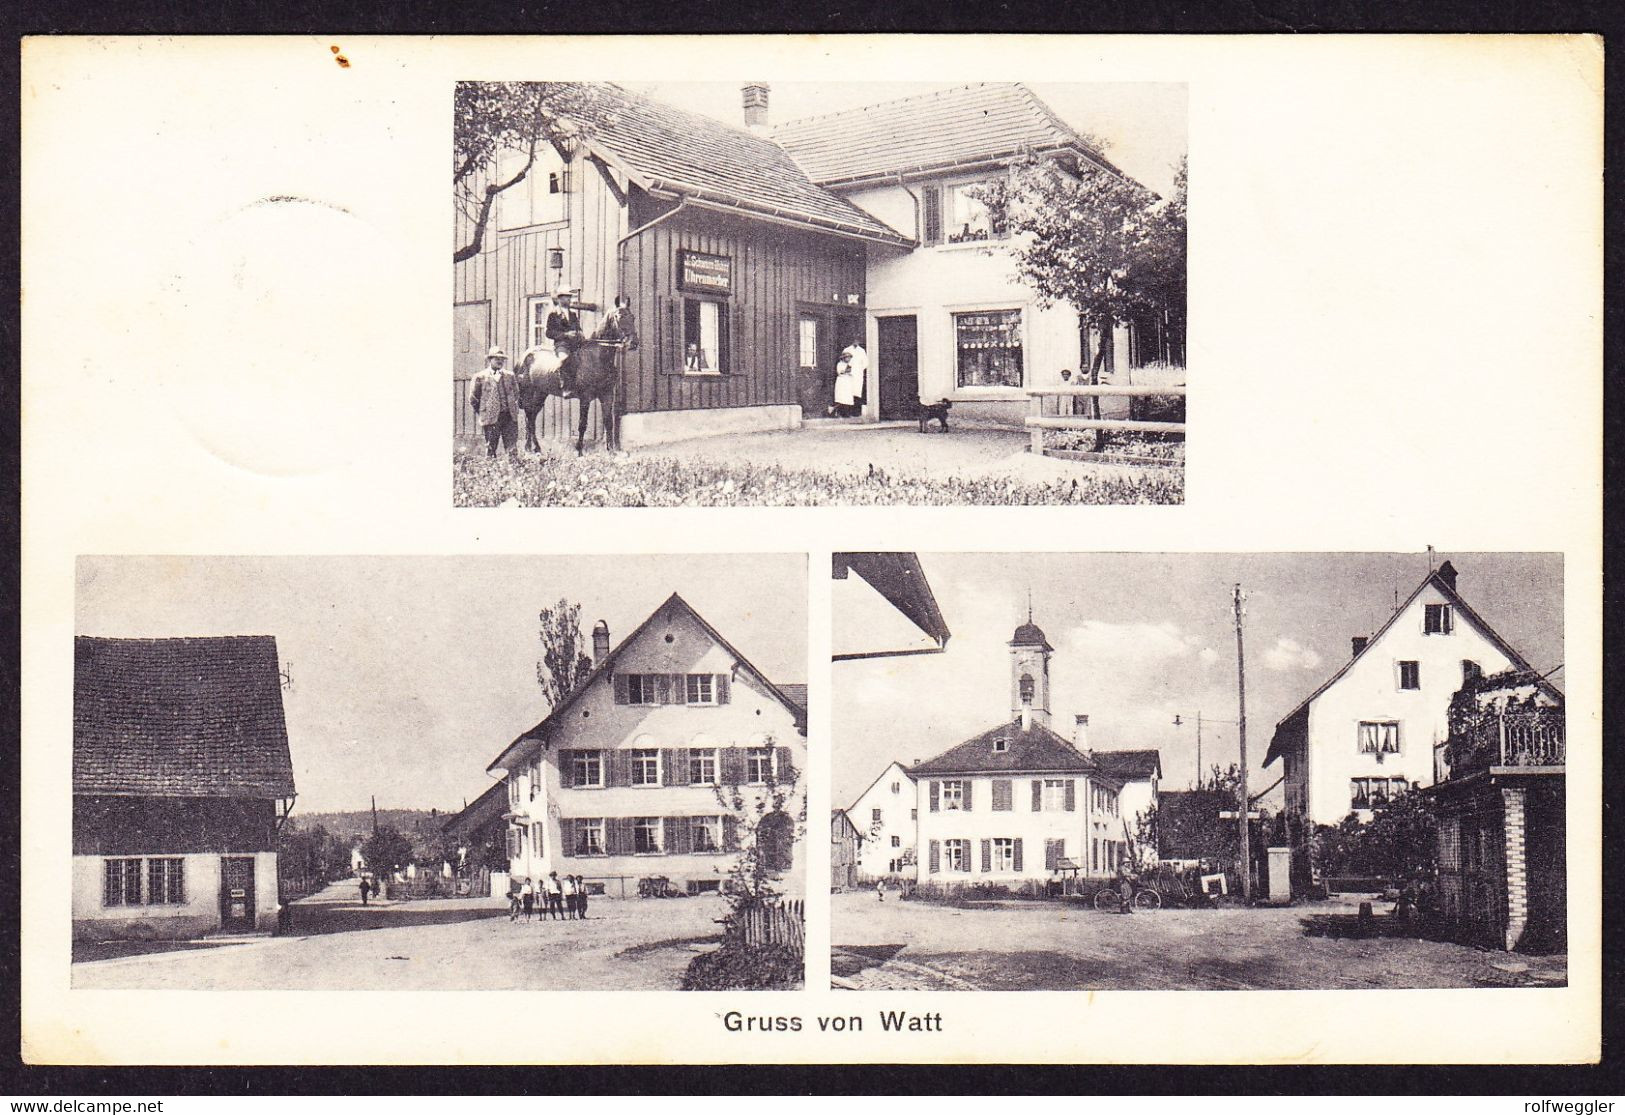 1920 Gelaufene AK "Gruss Aus Watt" 3 Bildrig, Pferd Vor Uhrmacher Geschäft. Stempel Watt B. Regensdorf. Ränder Minim - Regensdorf